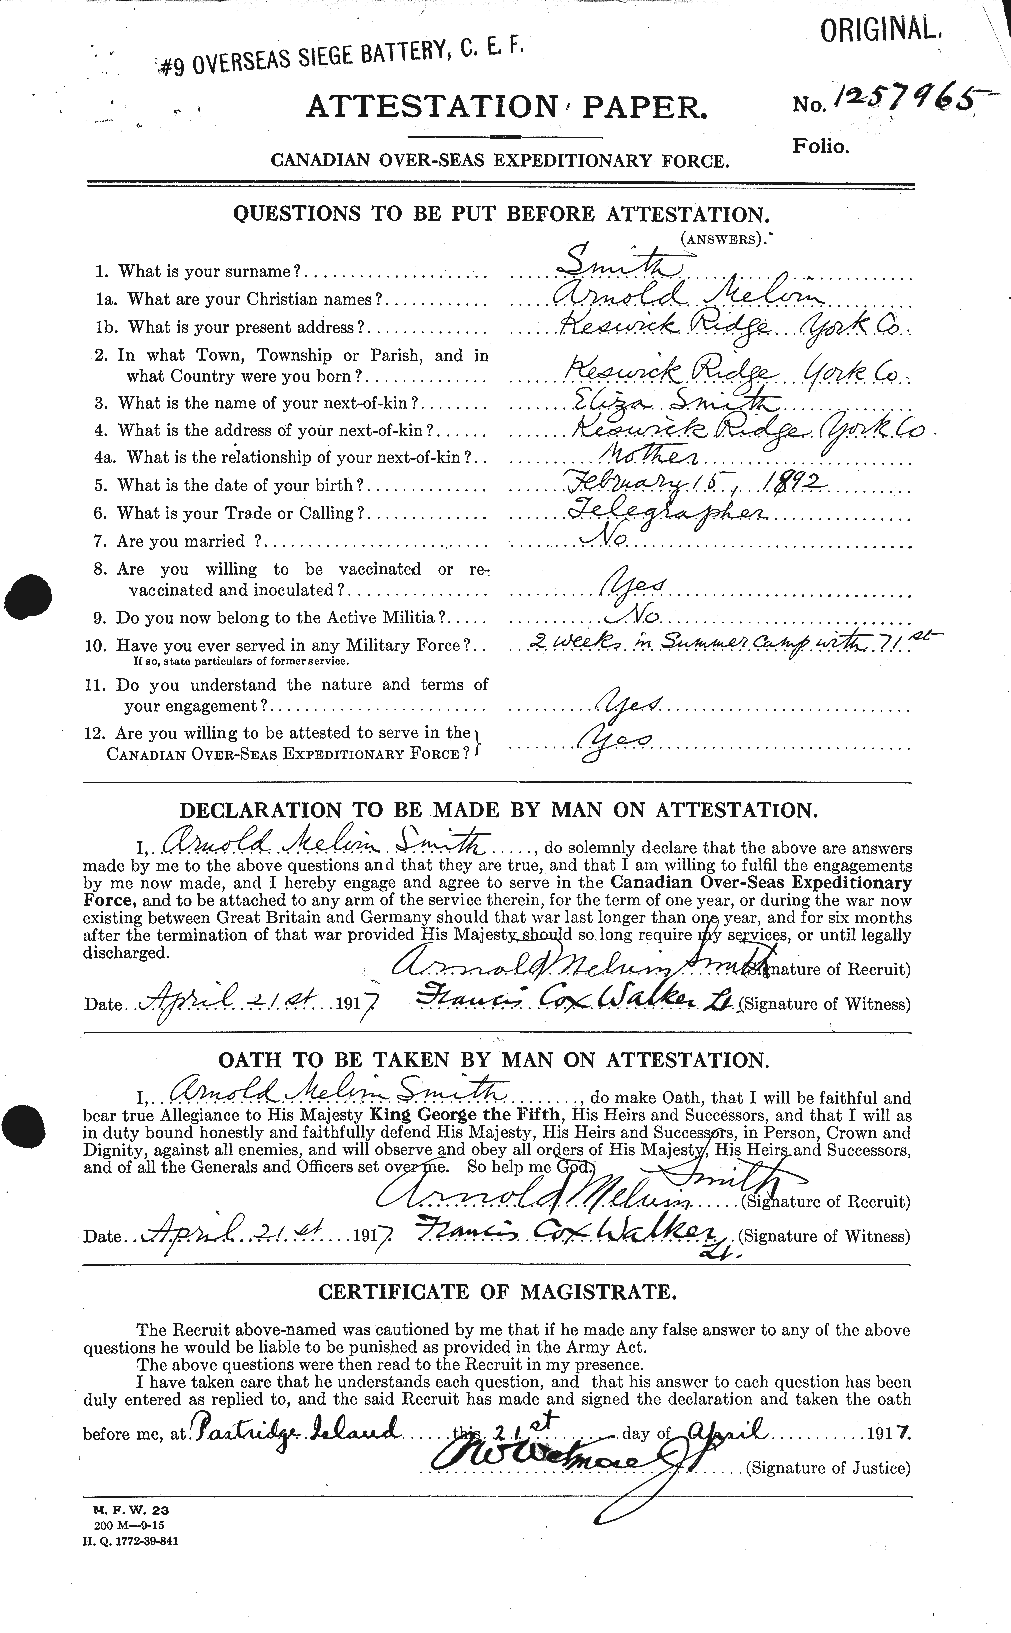 Dossiers du Personnel de la Première Guerre mondiale - CEC 102193a